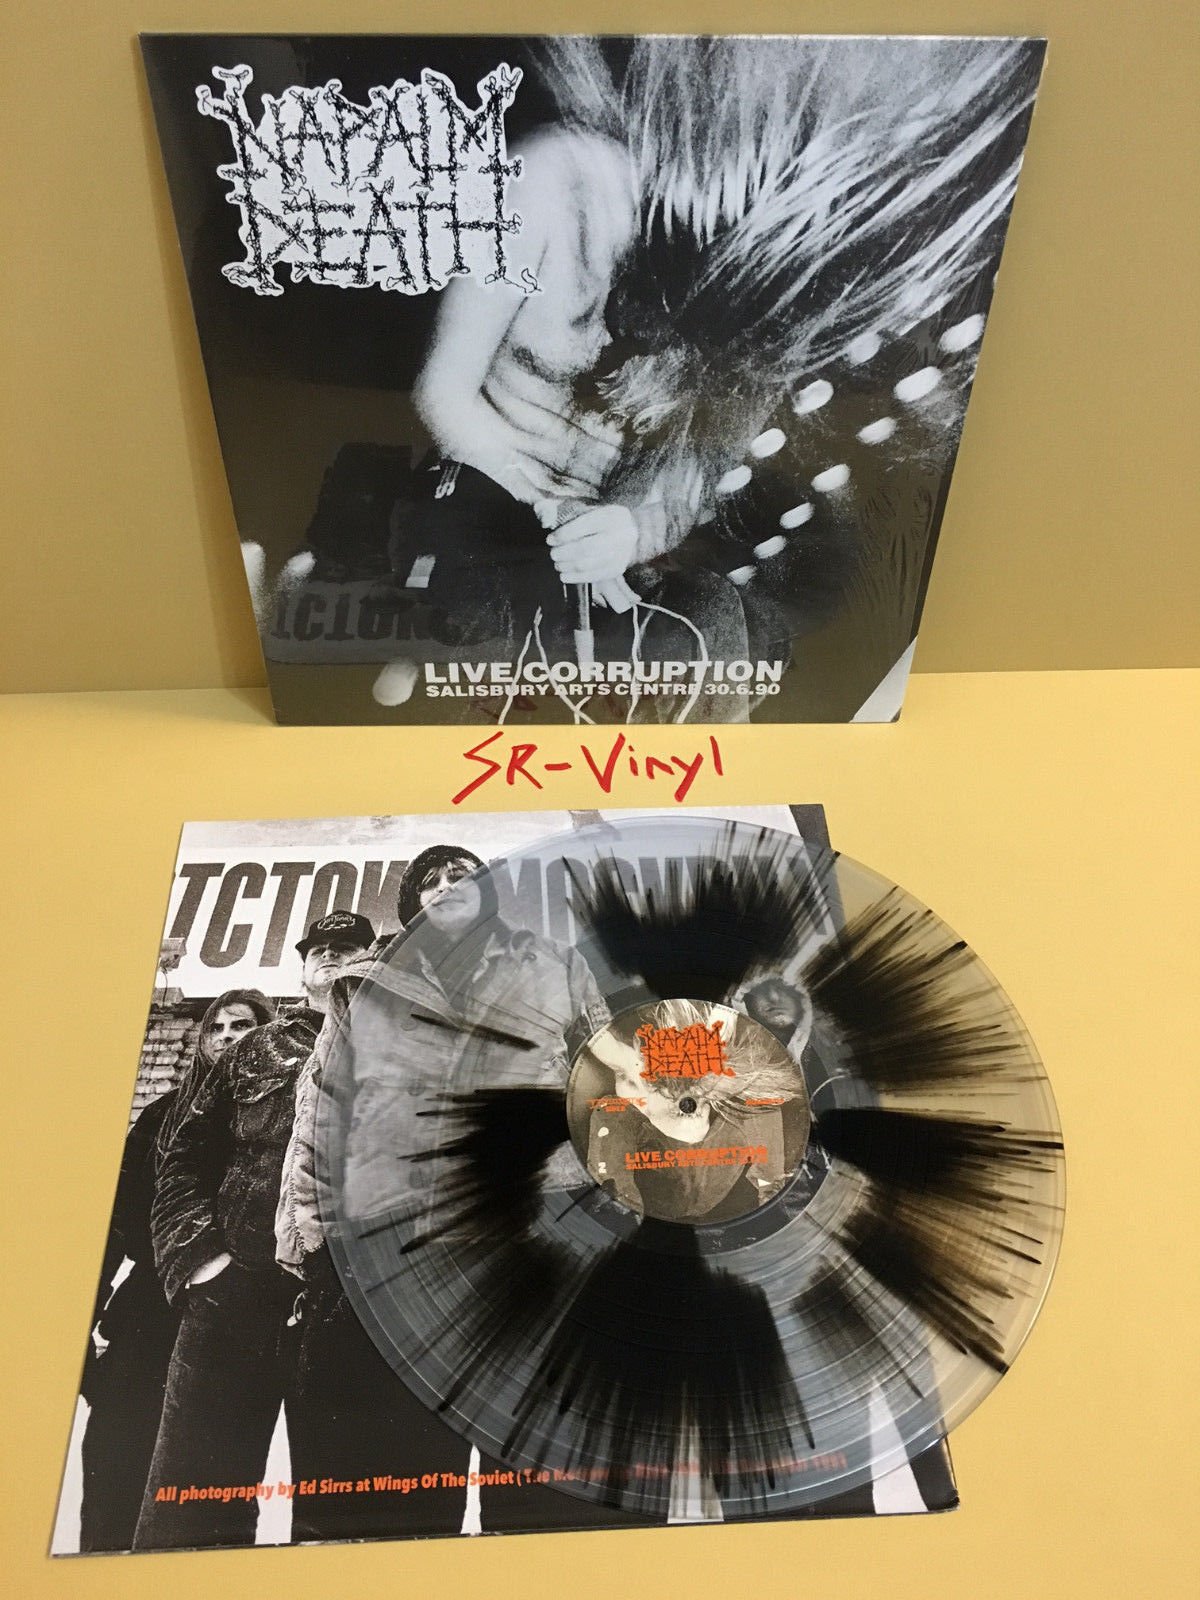 popsike.com - Napalm Death - Live Corruption vinyl lp /100 brutal